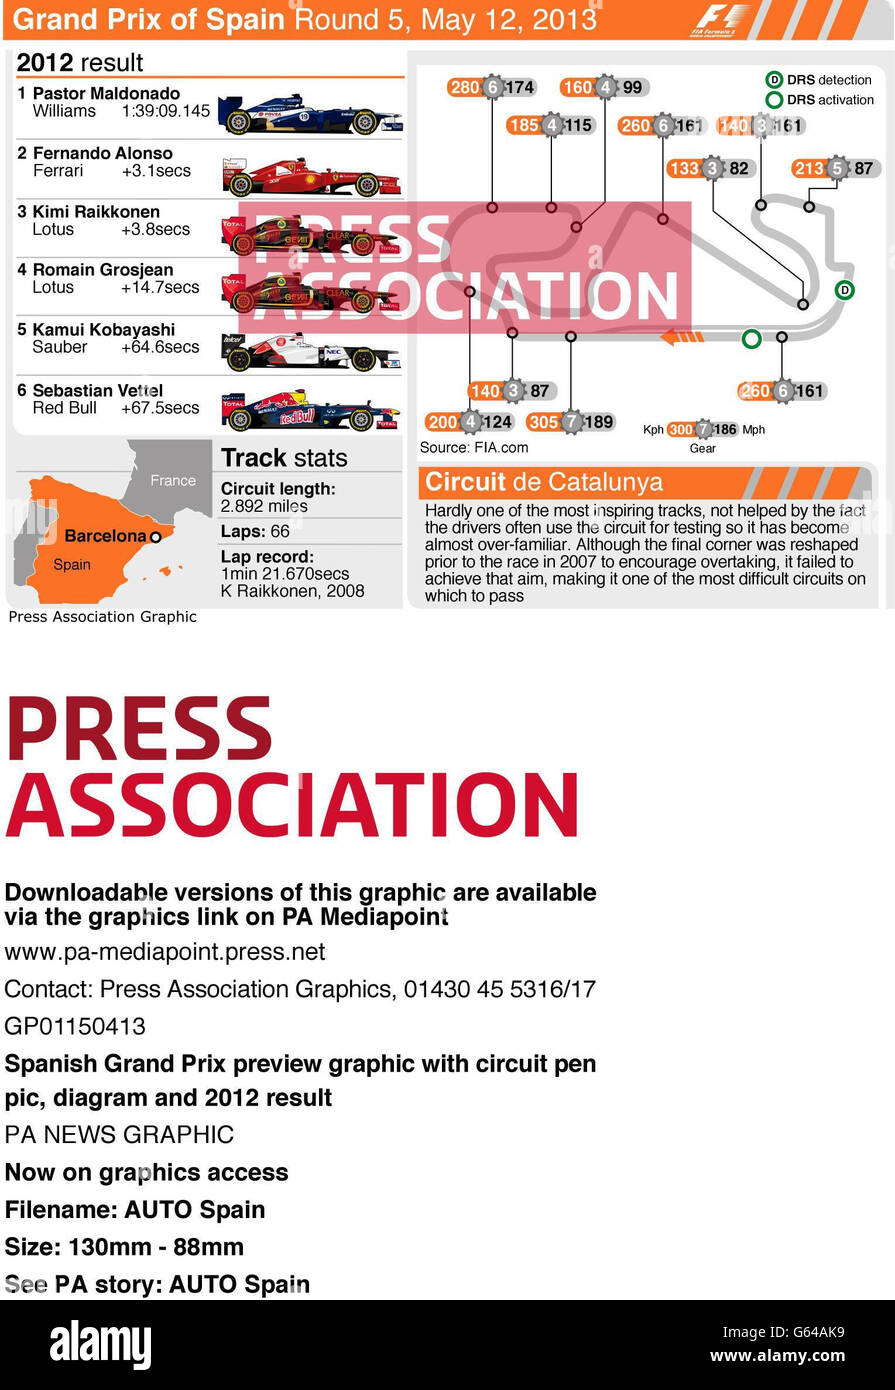 Anteprima del Gran Premio di Spagna con circuito grafico a penna, statistiche di pista, diagramma e risultato 2012 Foto Stock